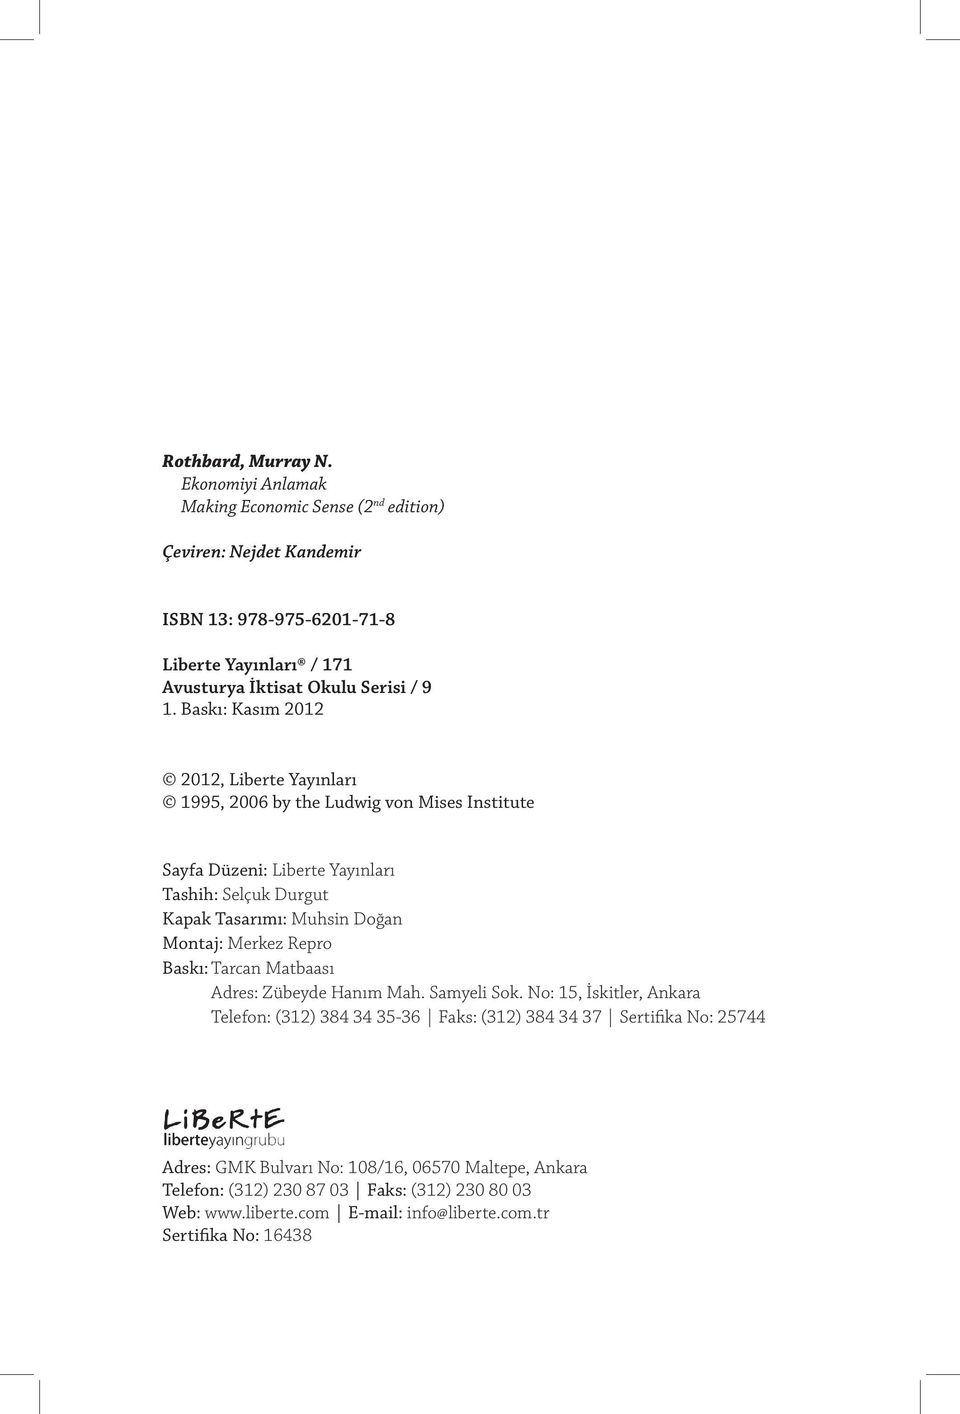 Baskı: Kasım 2012 2012, Liberte Yayınları 1995, 2006 by the Ludwig von Mises Institute Sayfa Düzeni: Liberte Yayınları Tashih: Selçuk Durgut Kapak Tasarımı: Muhsin Doğan